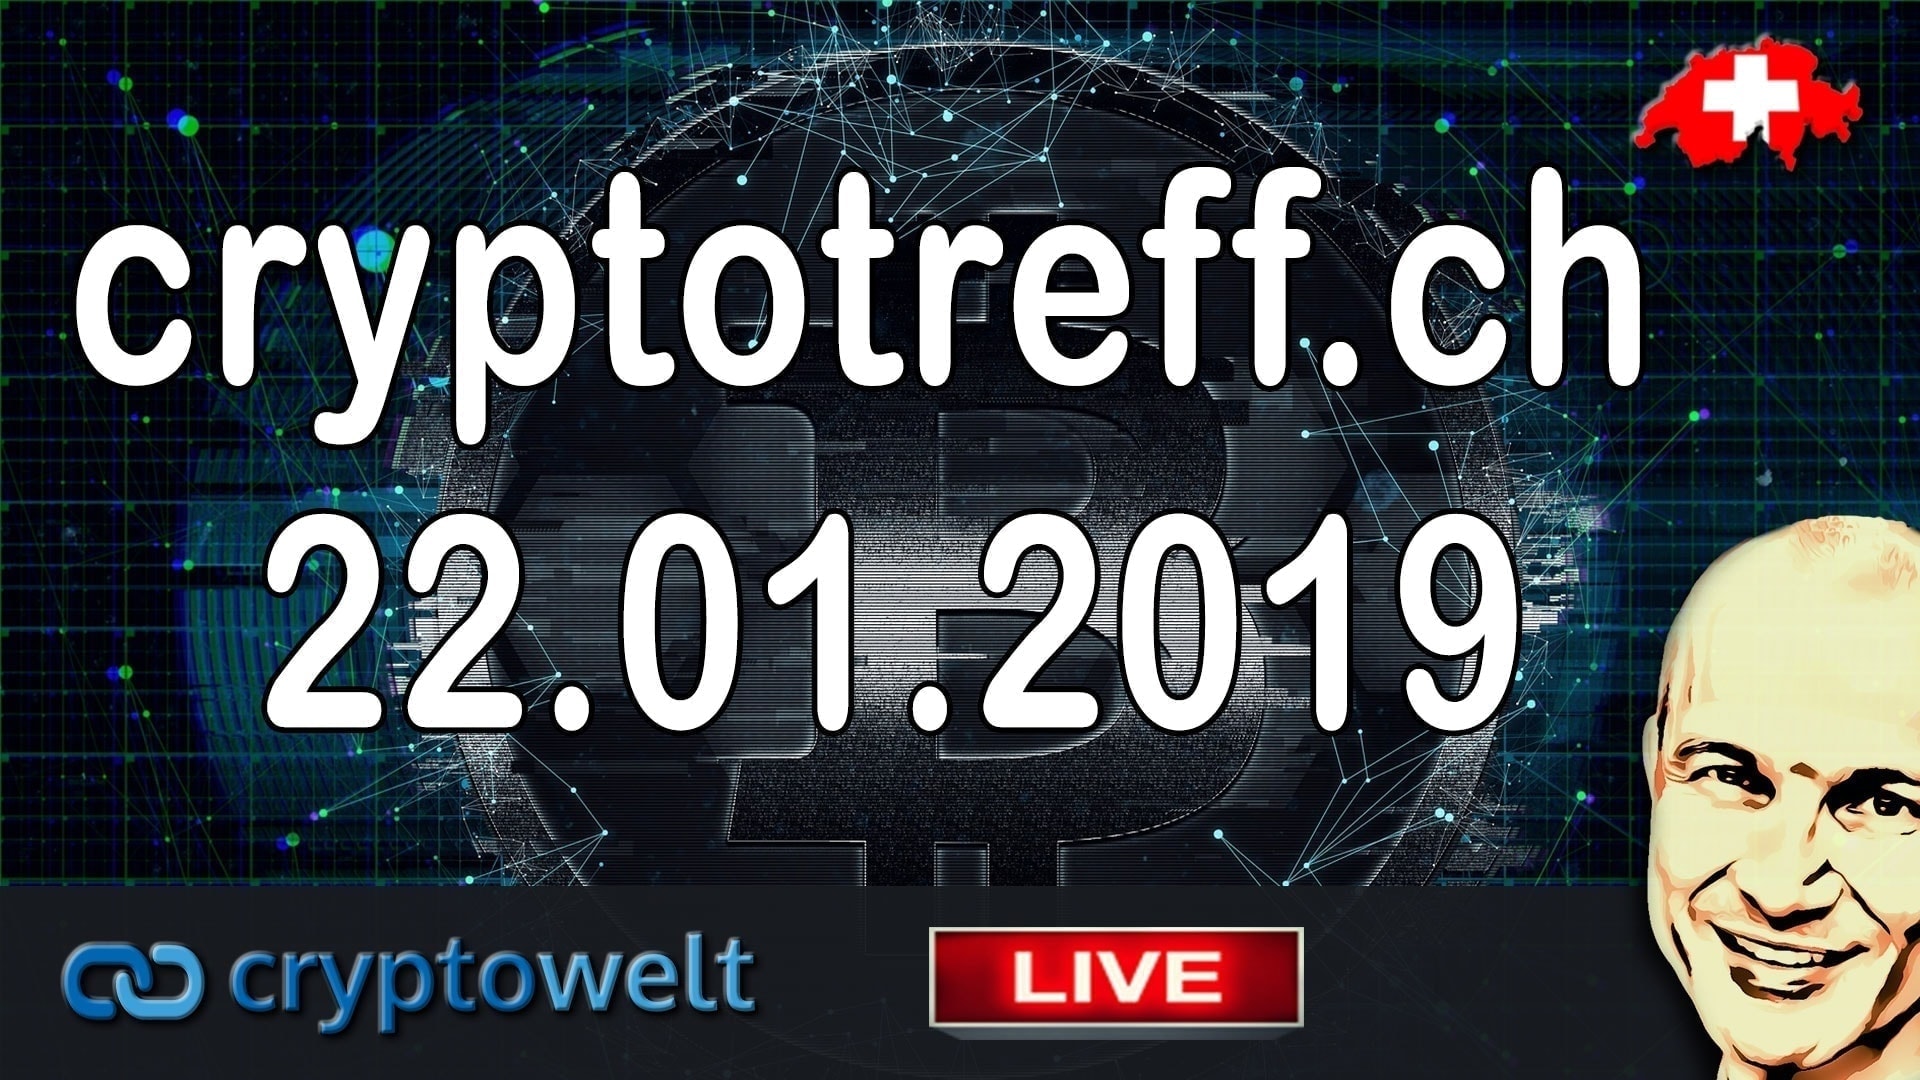 cryptotreff-ch-22-januar-2019-in-duebendorf-zuerich